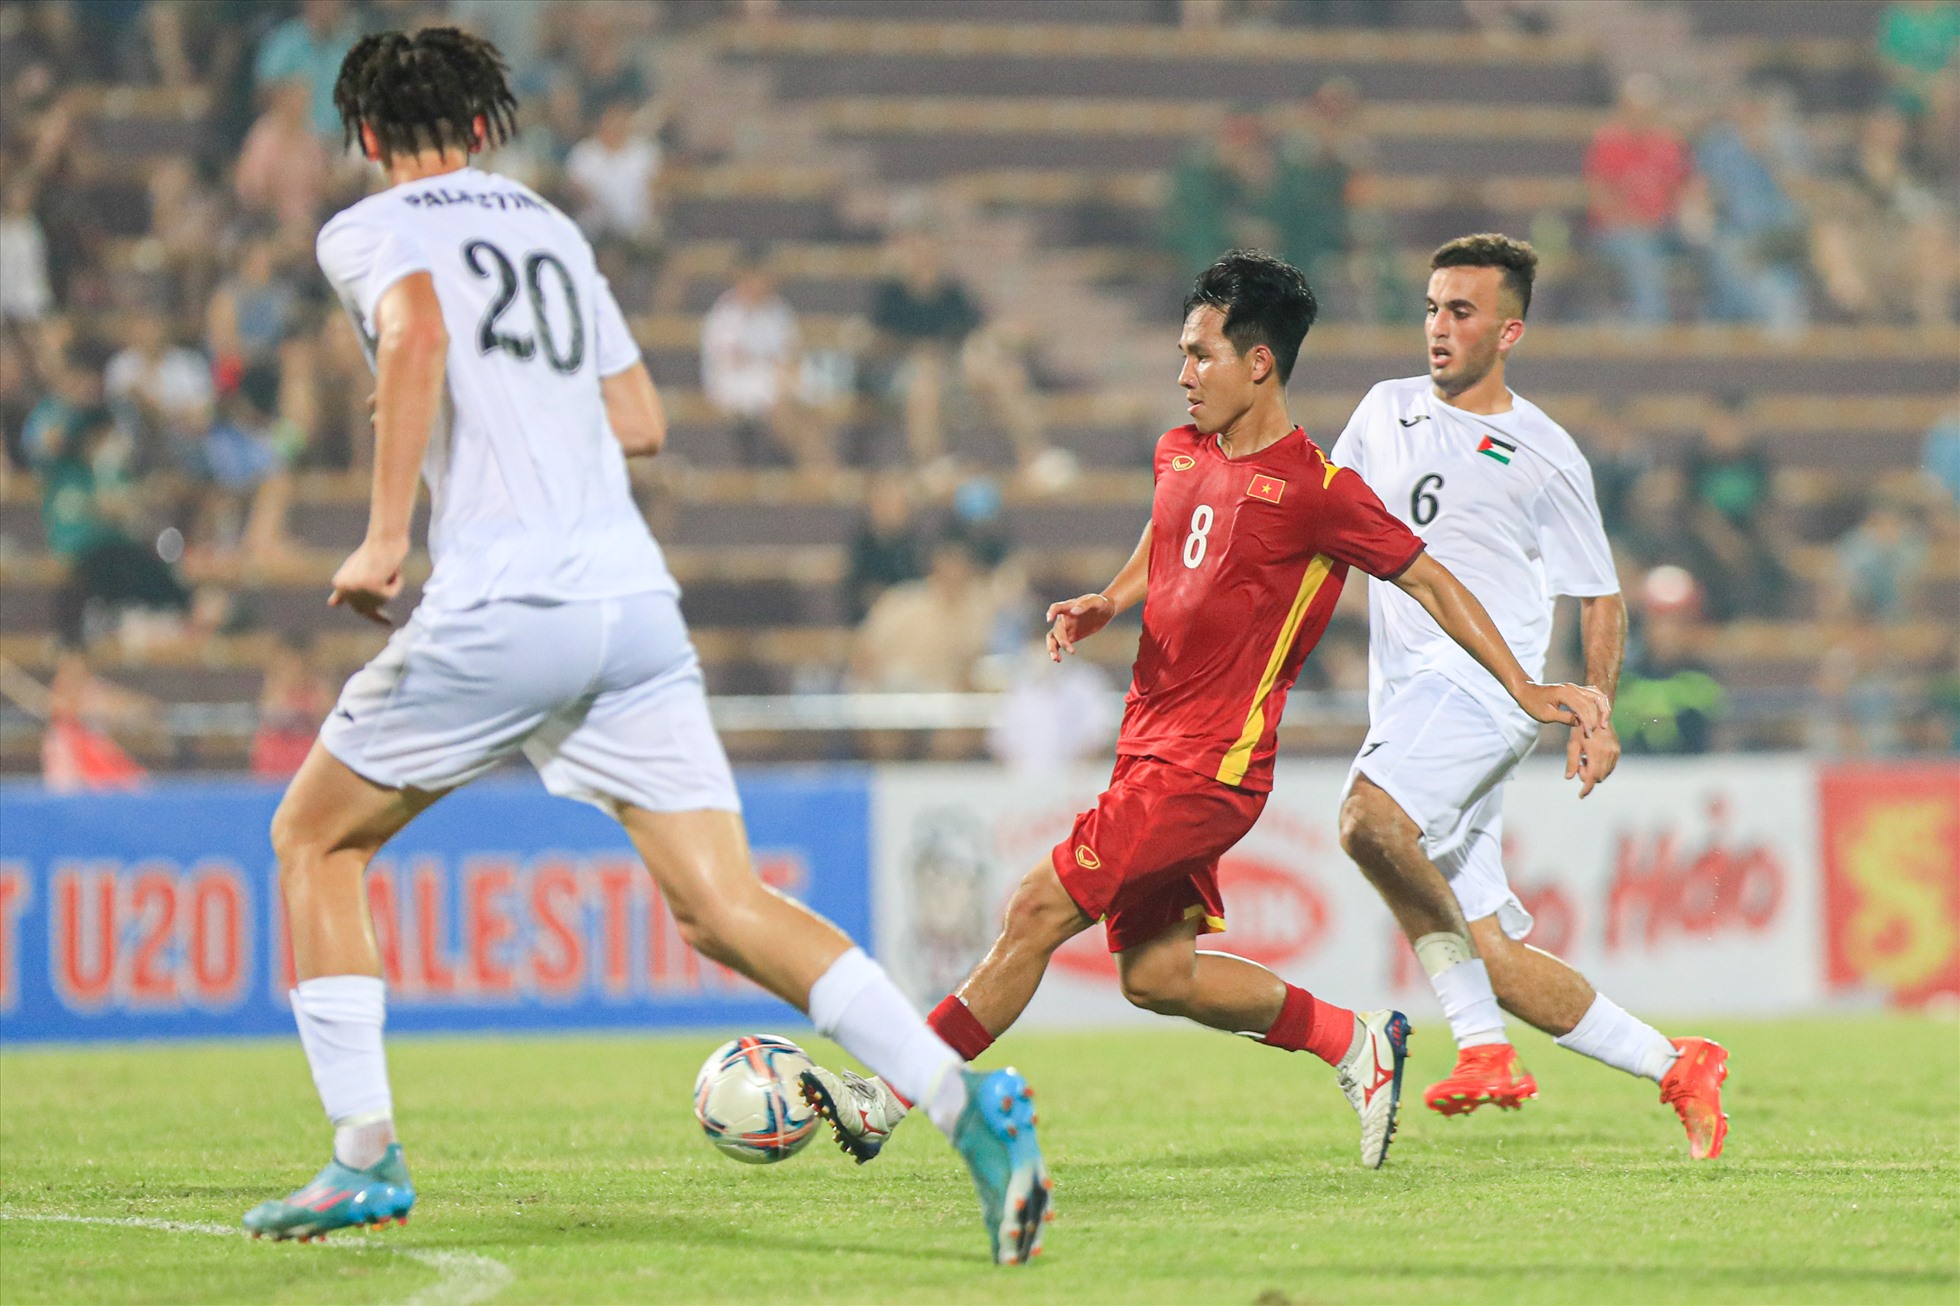 Chung cuộc, cả hai đội rời sân với tỉ số hoà 0-0. Sau đây 3 ngày, U20 Việt Nam và U20 Palestine sẽ có cuộc tái đấu (đấu kín). Đây là trận đấu mà Palestine sẽ có được lực lượng mạnh nhất với nhiều cầu thủ bổ sung thi đấu châu Âu.